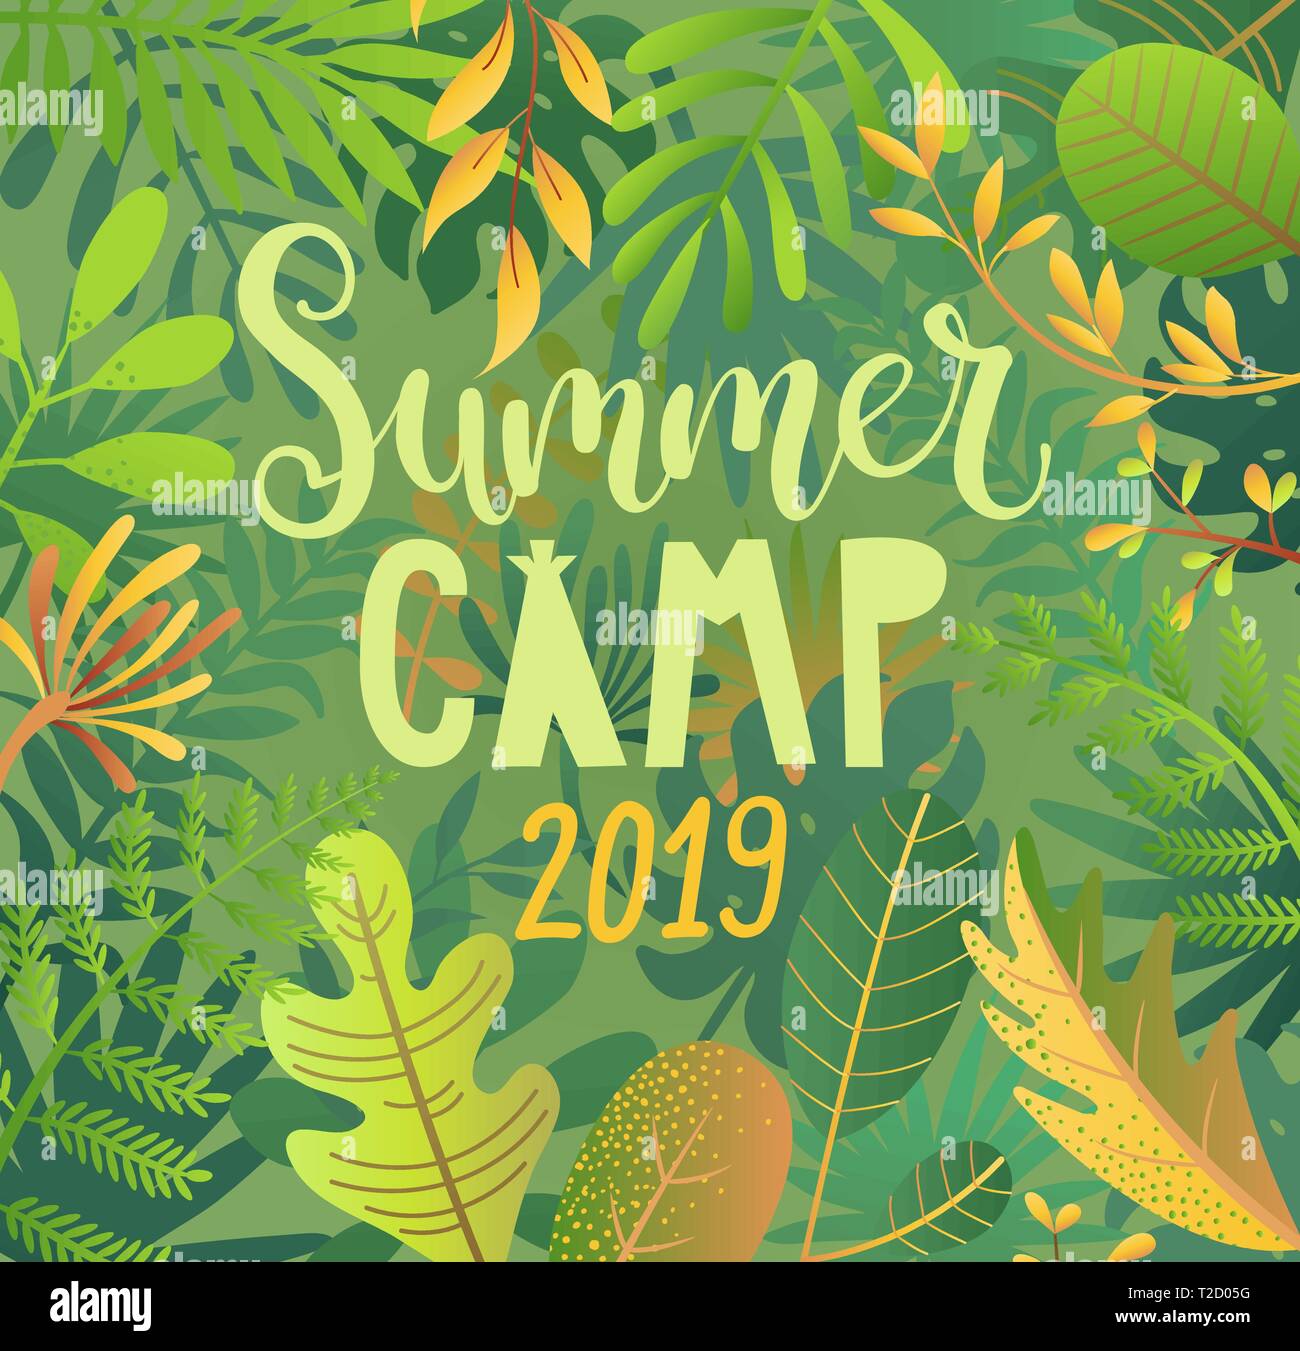 Sommer Camp 2019 Beschriftung auf Dschungel Hintergrund. Stock Vektor